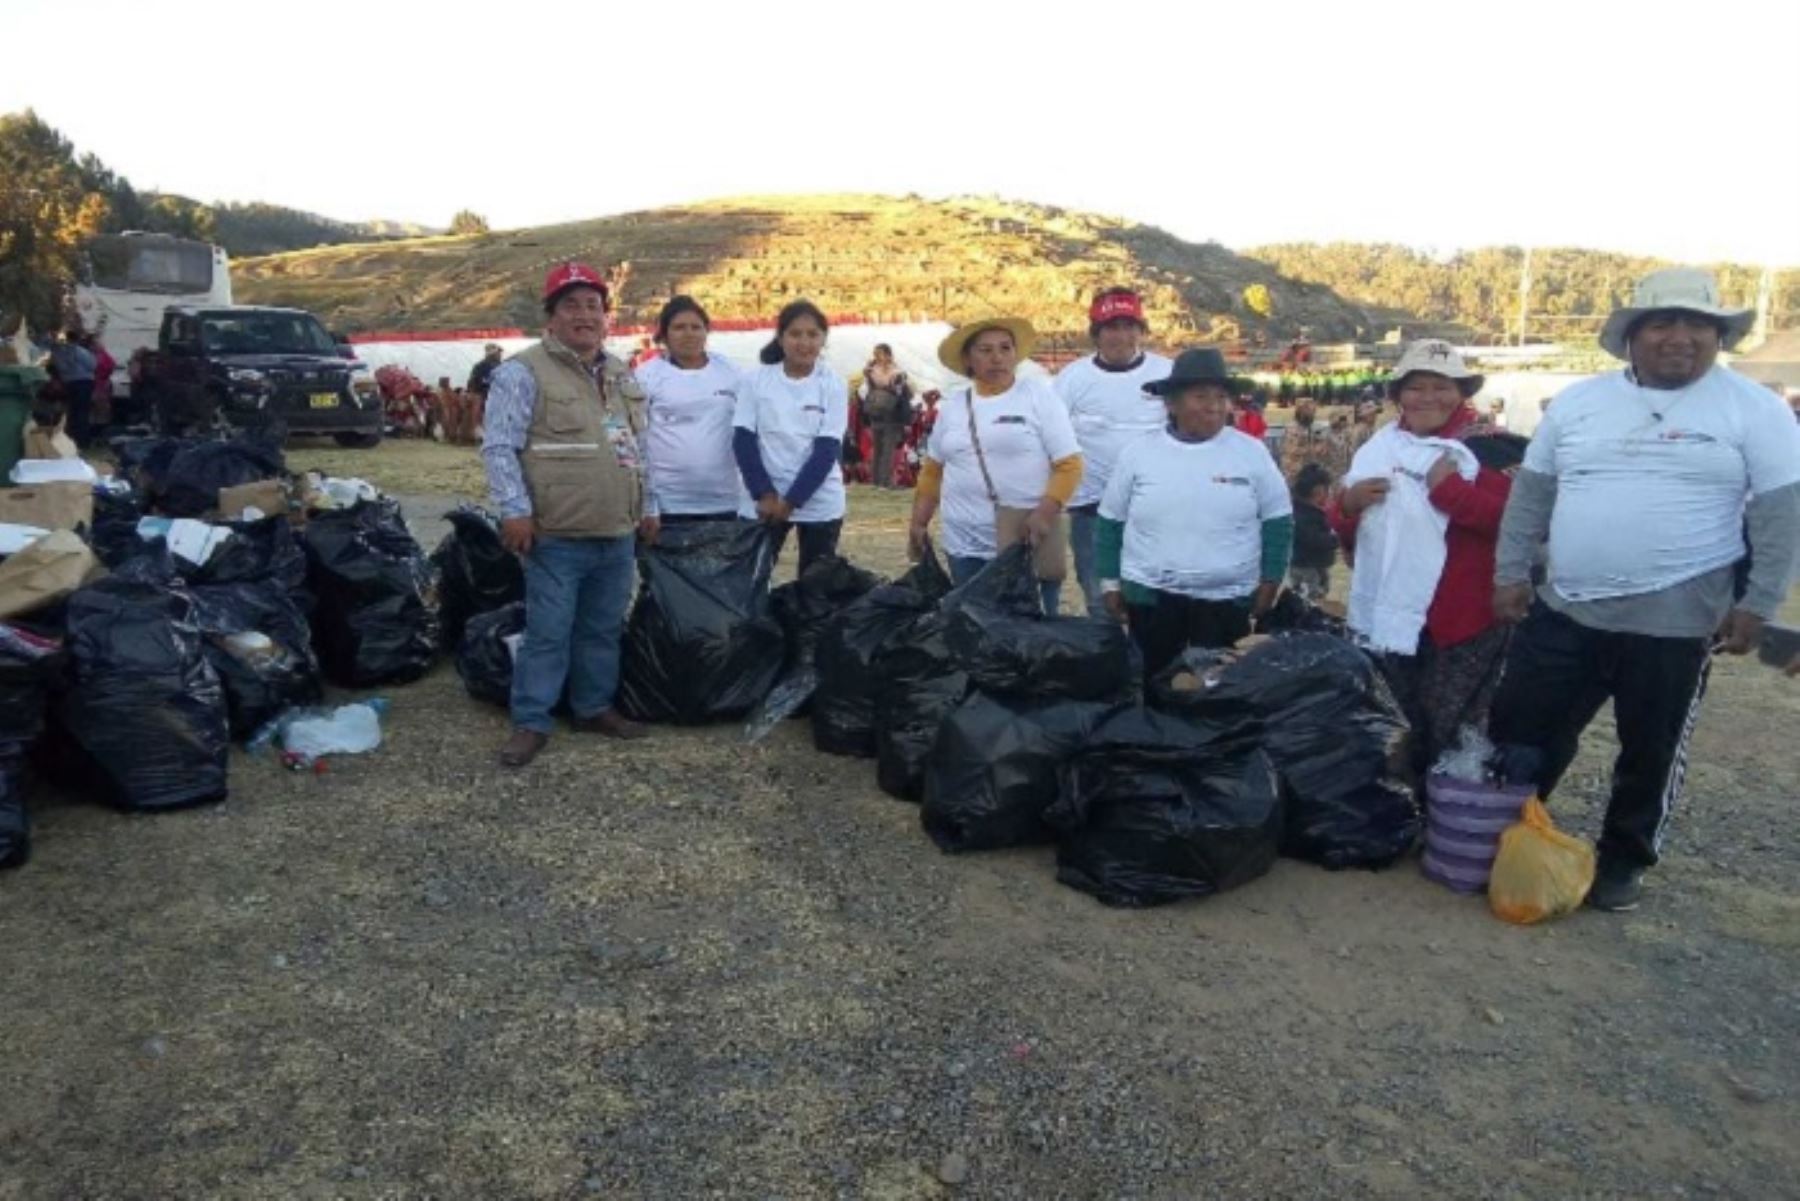 Un total de 300 voluntarios del Cusco realizaron una importante jornada de limpieza alrededor del Parque Arqueológico de Sacsayhuamán, luego de la escenificación del Inti Raymi, destacó el viceministro de Turismo, José Vidal.